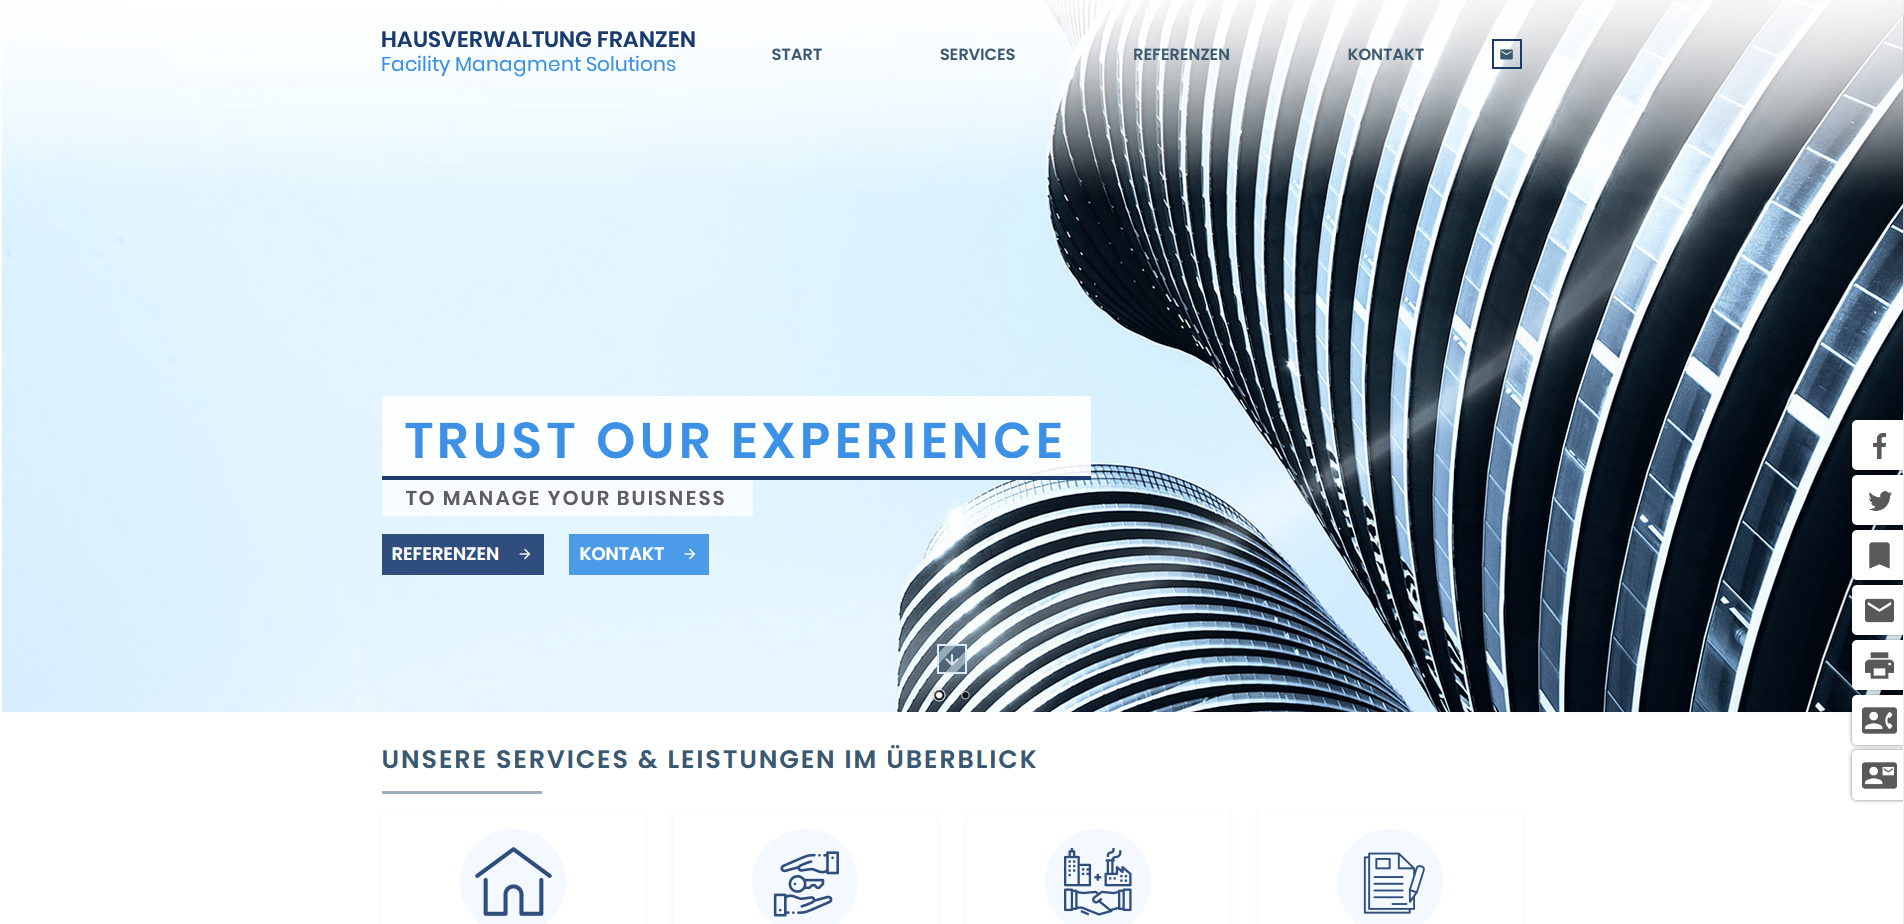 Hausverwaltung-Franzen GmbH